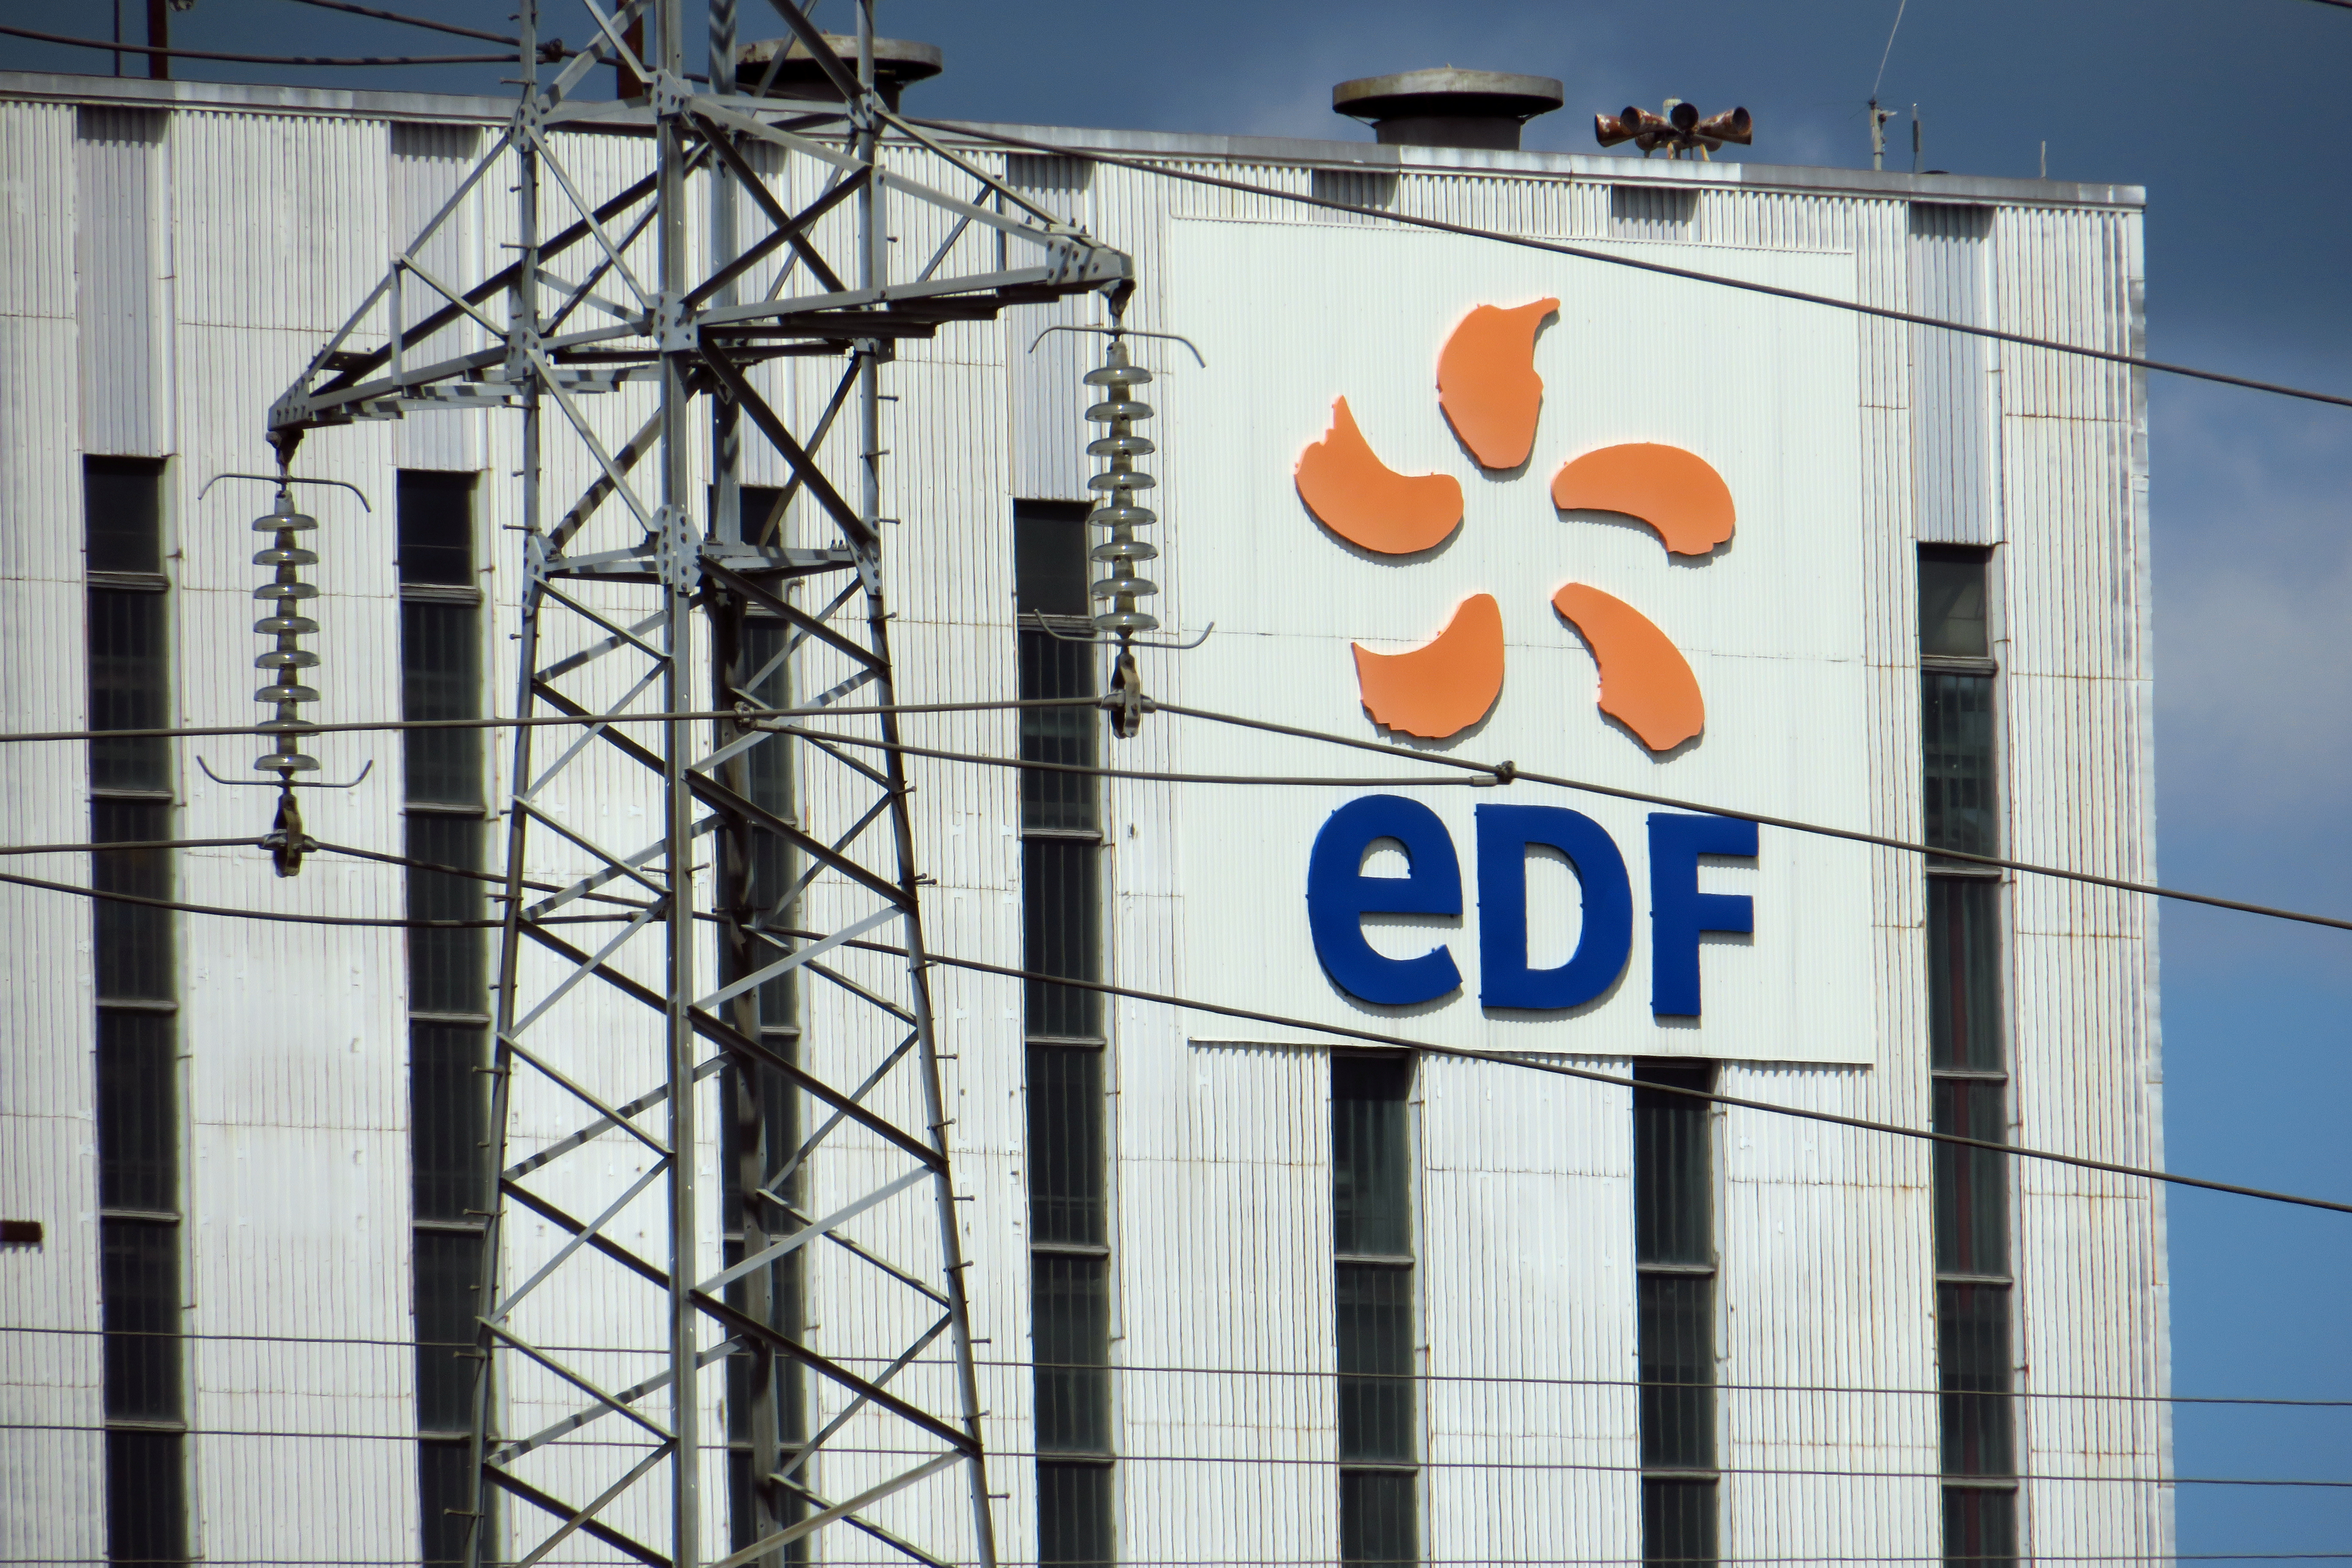 Le projet Hercule de réorganisation d'EDF ne conduira pas à une scission ou à une privatisation (PDG)